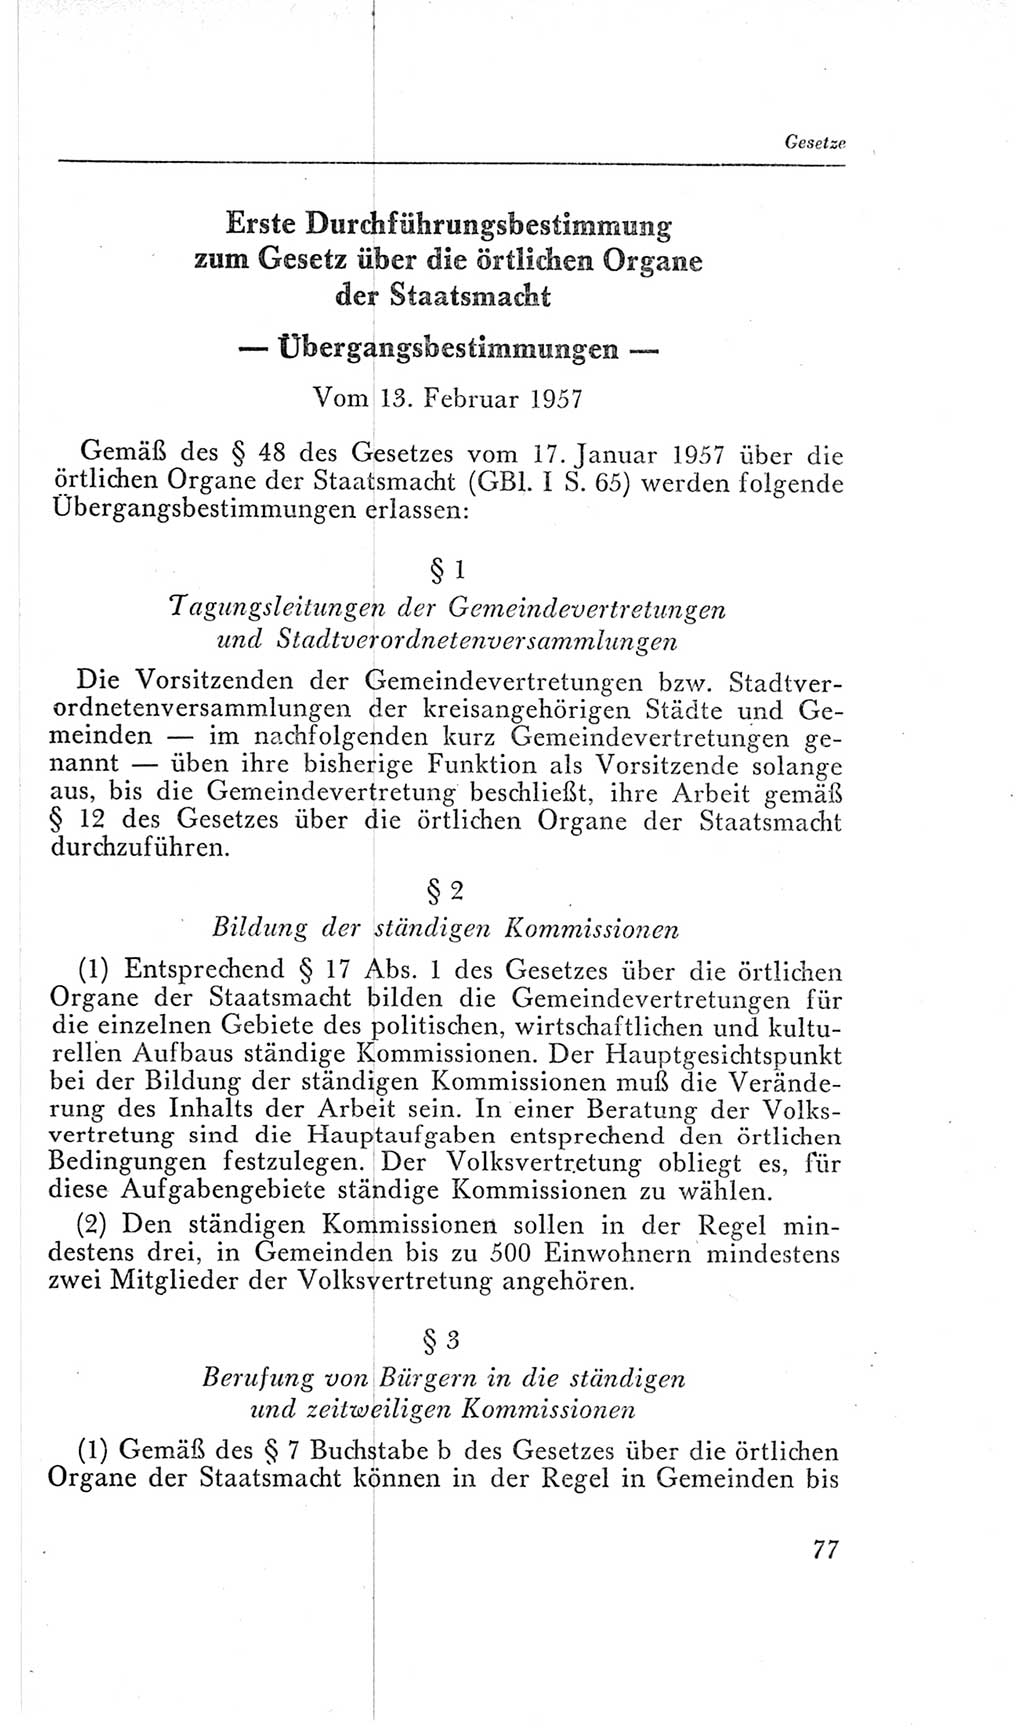 Handbuch der Volkskammer (VK) der Deutschen Demokratischen Republik (DDR), 2. Wahlperiode 1954-1958, Seite 77 (Hdb. VK. DDR, 2. WP. 1954-1958, S. 77)